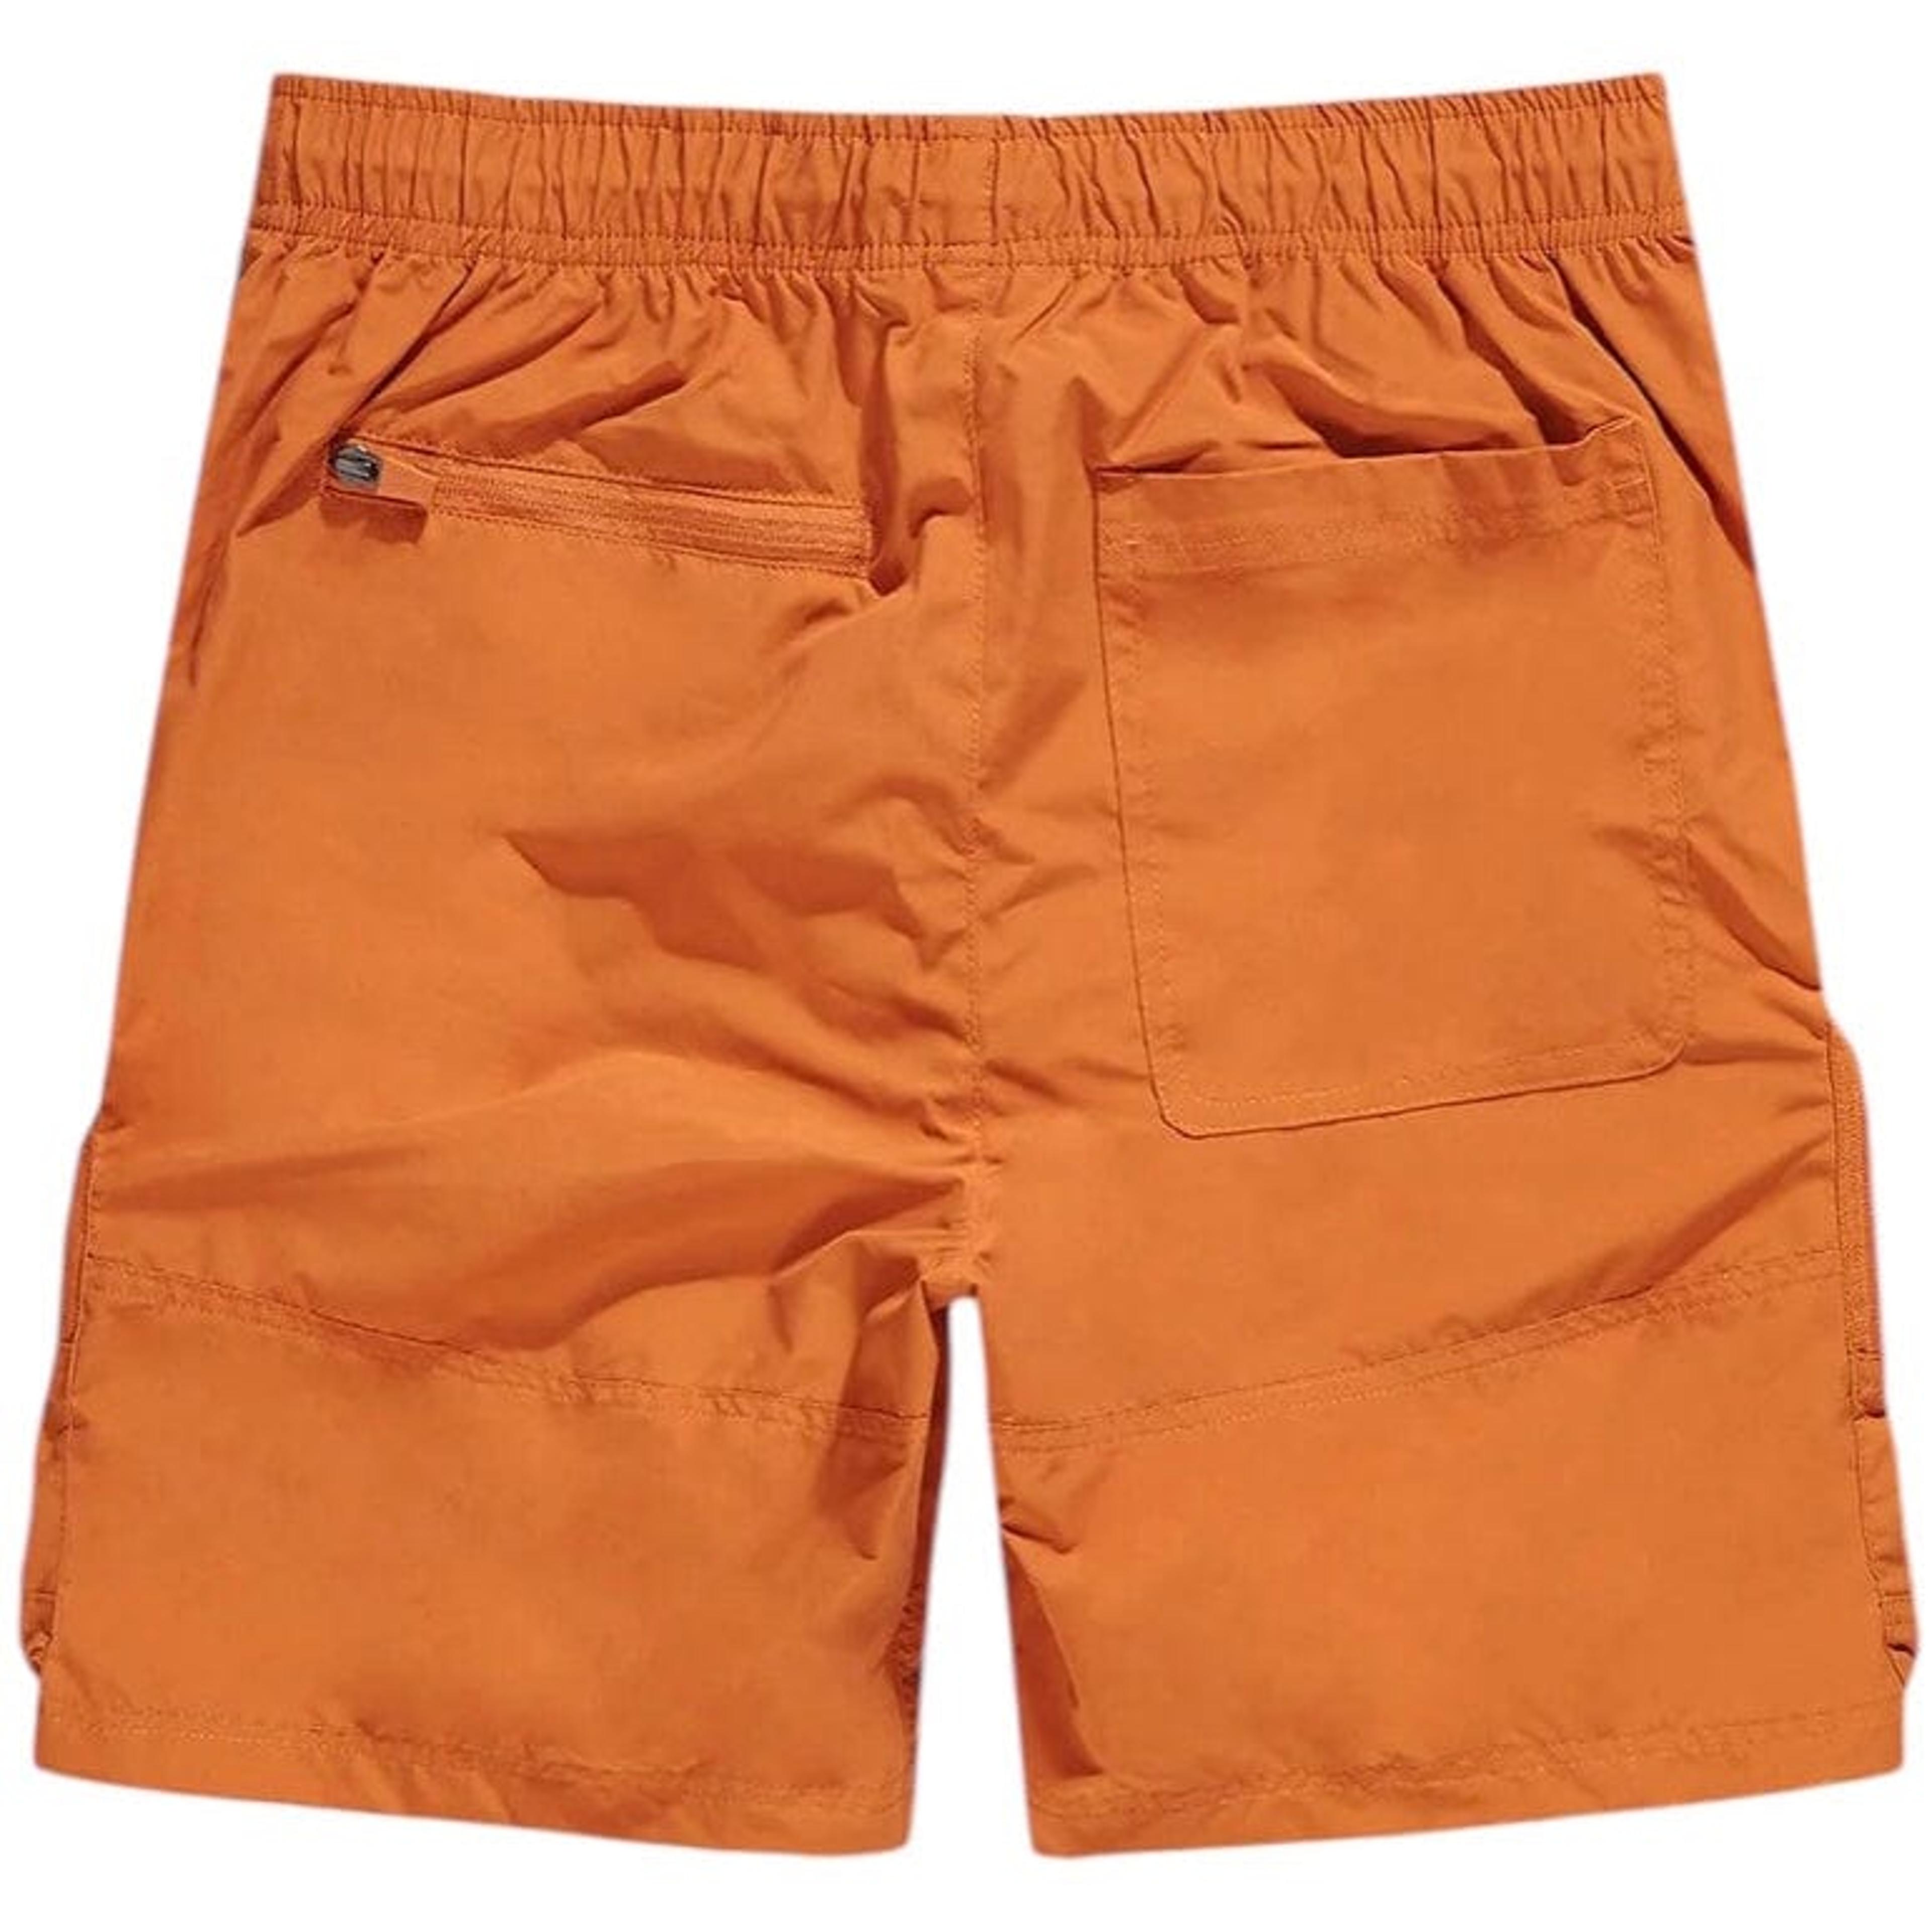 Alternate View 1 of Jordan Craig Retro Altitude Cargo Shorts (Burnt Orange) 4420